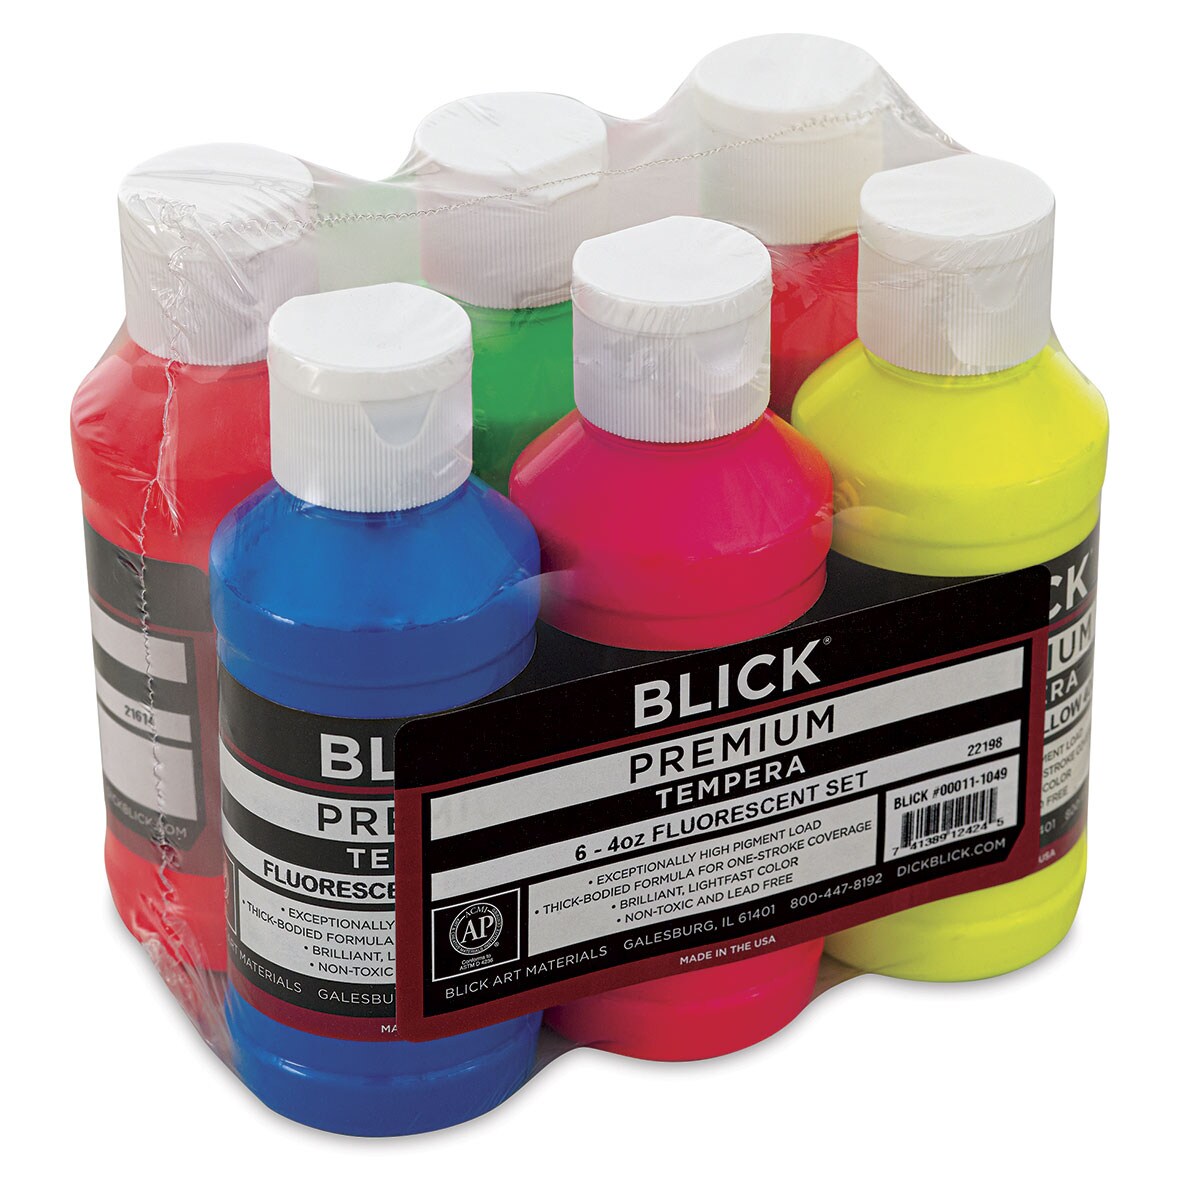 Blick Premium Grade Tempera - Fluorescent Colors, Set of 6, 4 oz